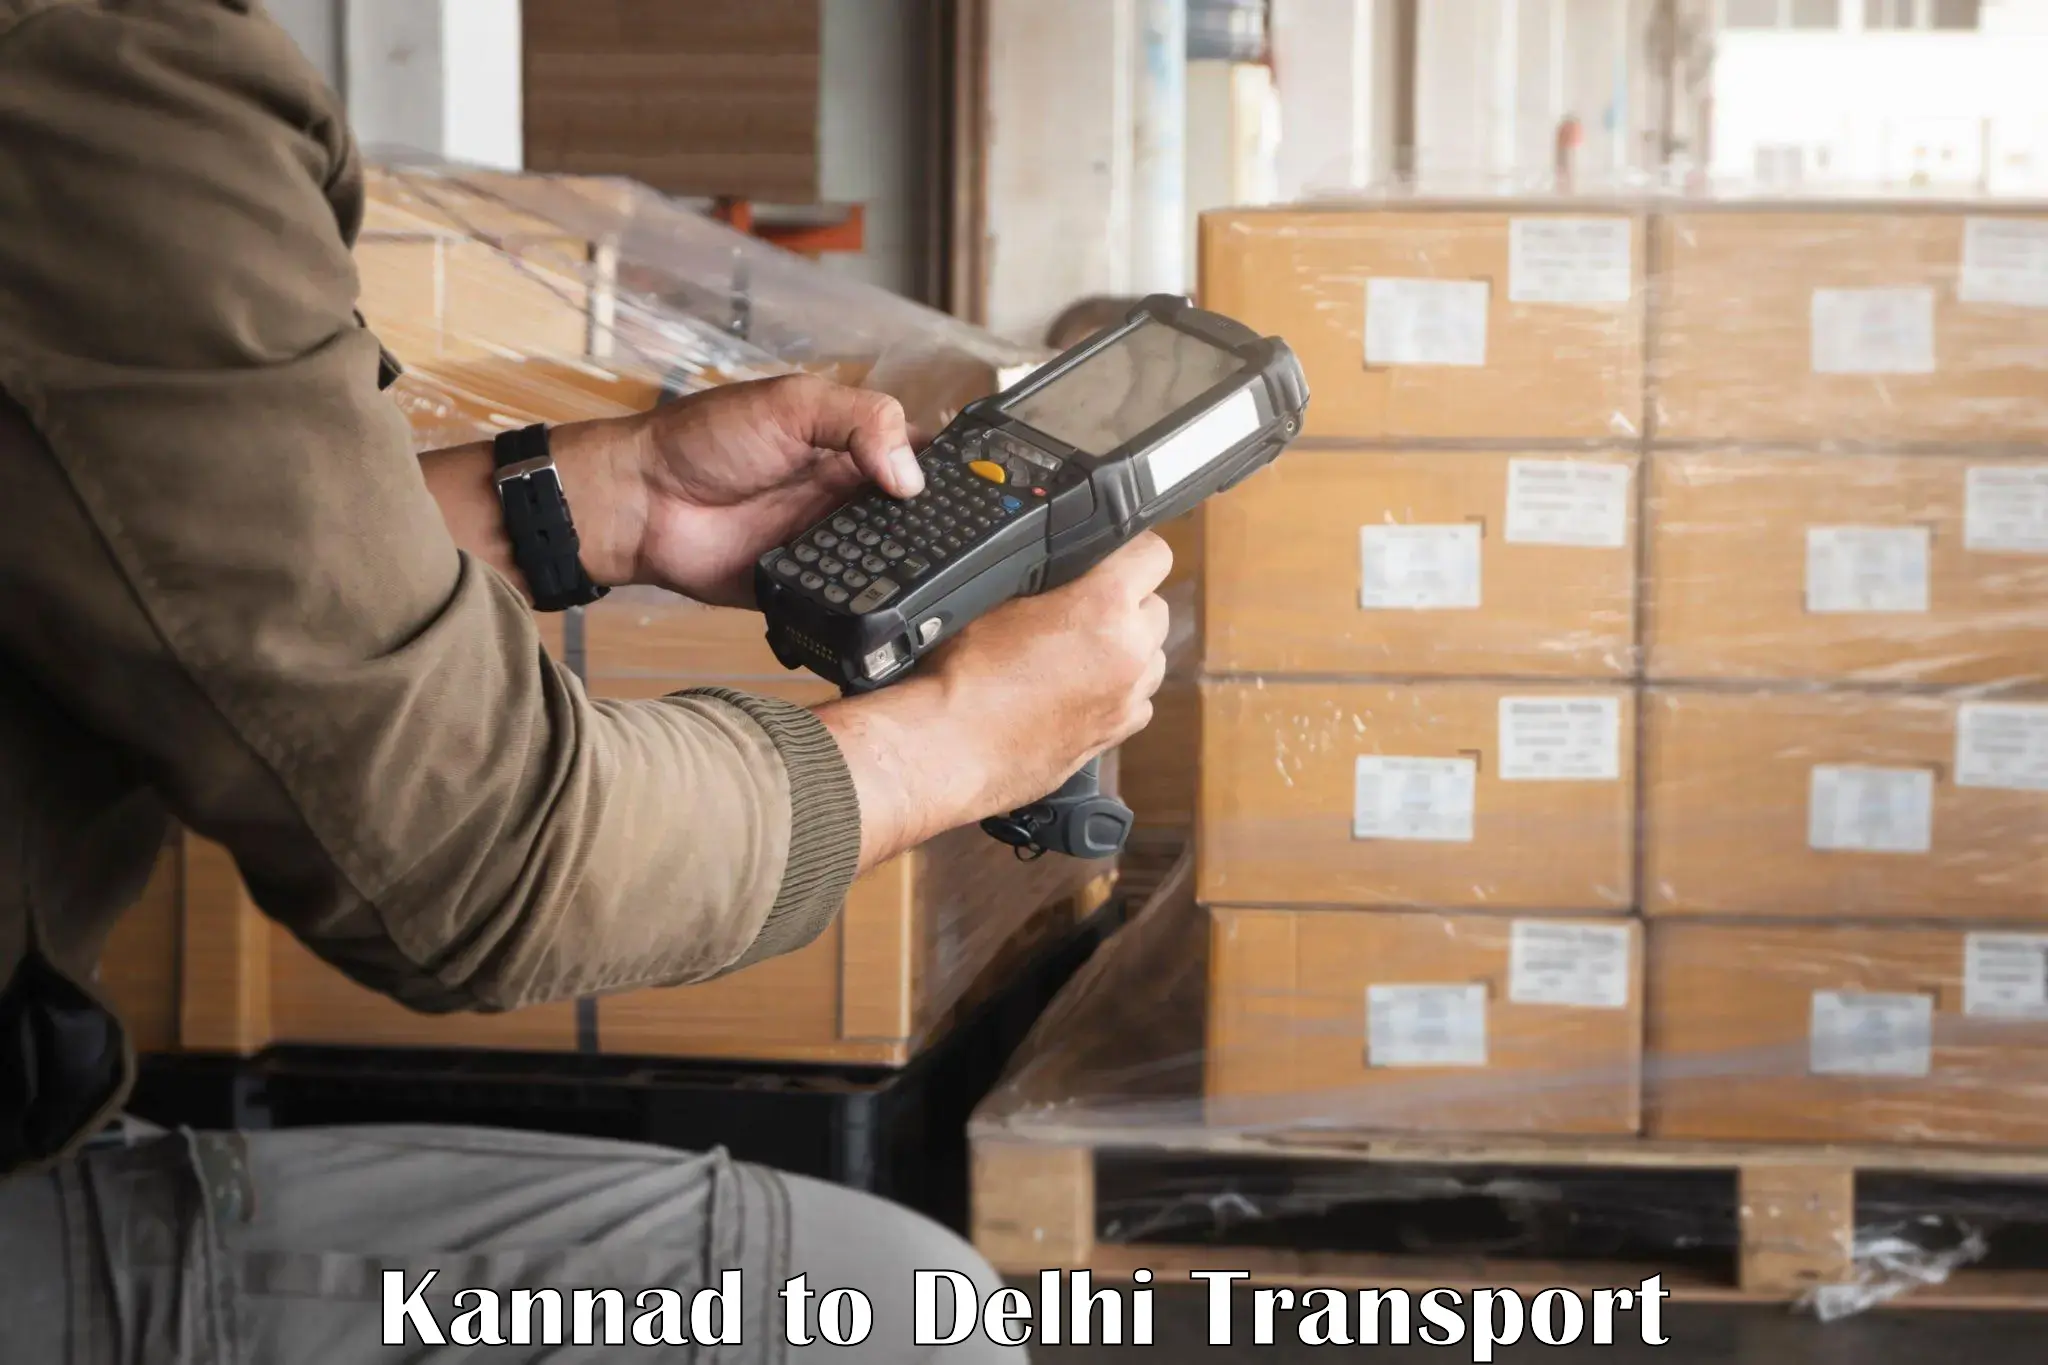 Furniture transport service in Kannad to Delhi Technological University DTU